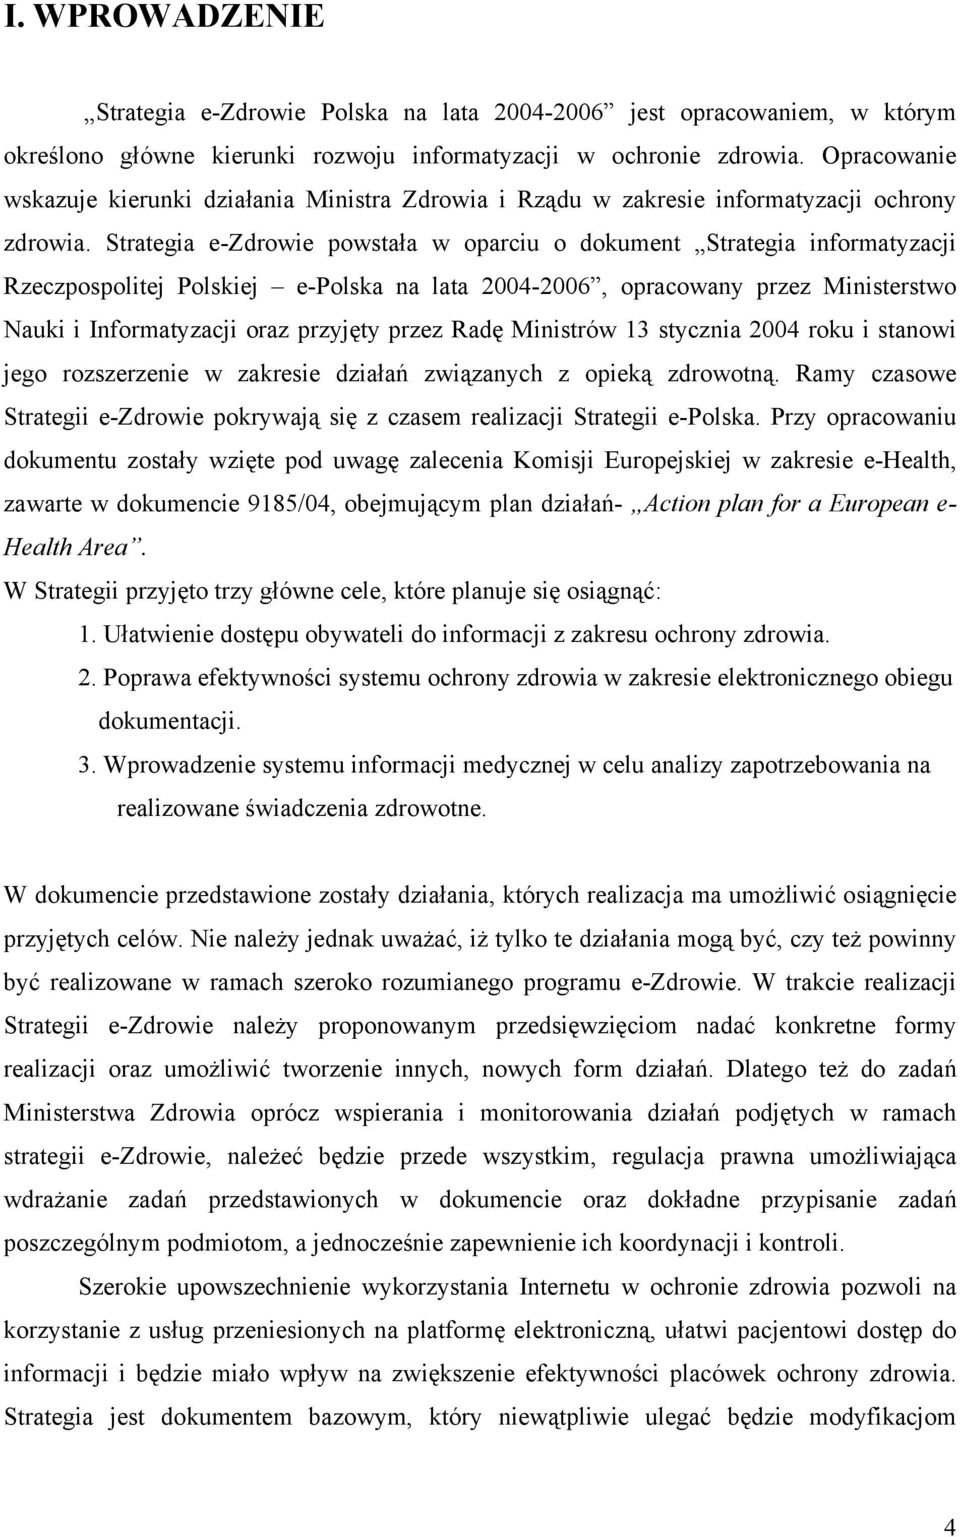 Strategia e-zdrowie powstała w oparciu o dokument Strategia informatyzacji Rzeczpospolitej Polskiej e-polska na lata 2004-2006, opracowany przez Ministerstwo Nauki i Informatyzacji oraz przyjęty